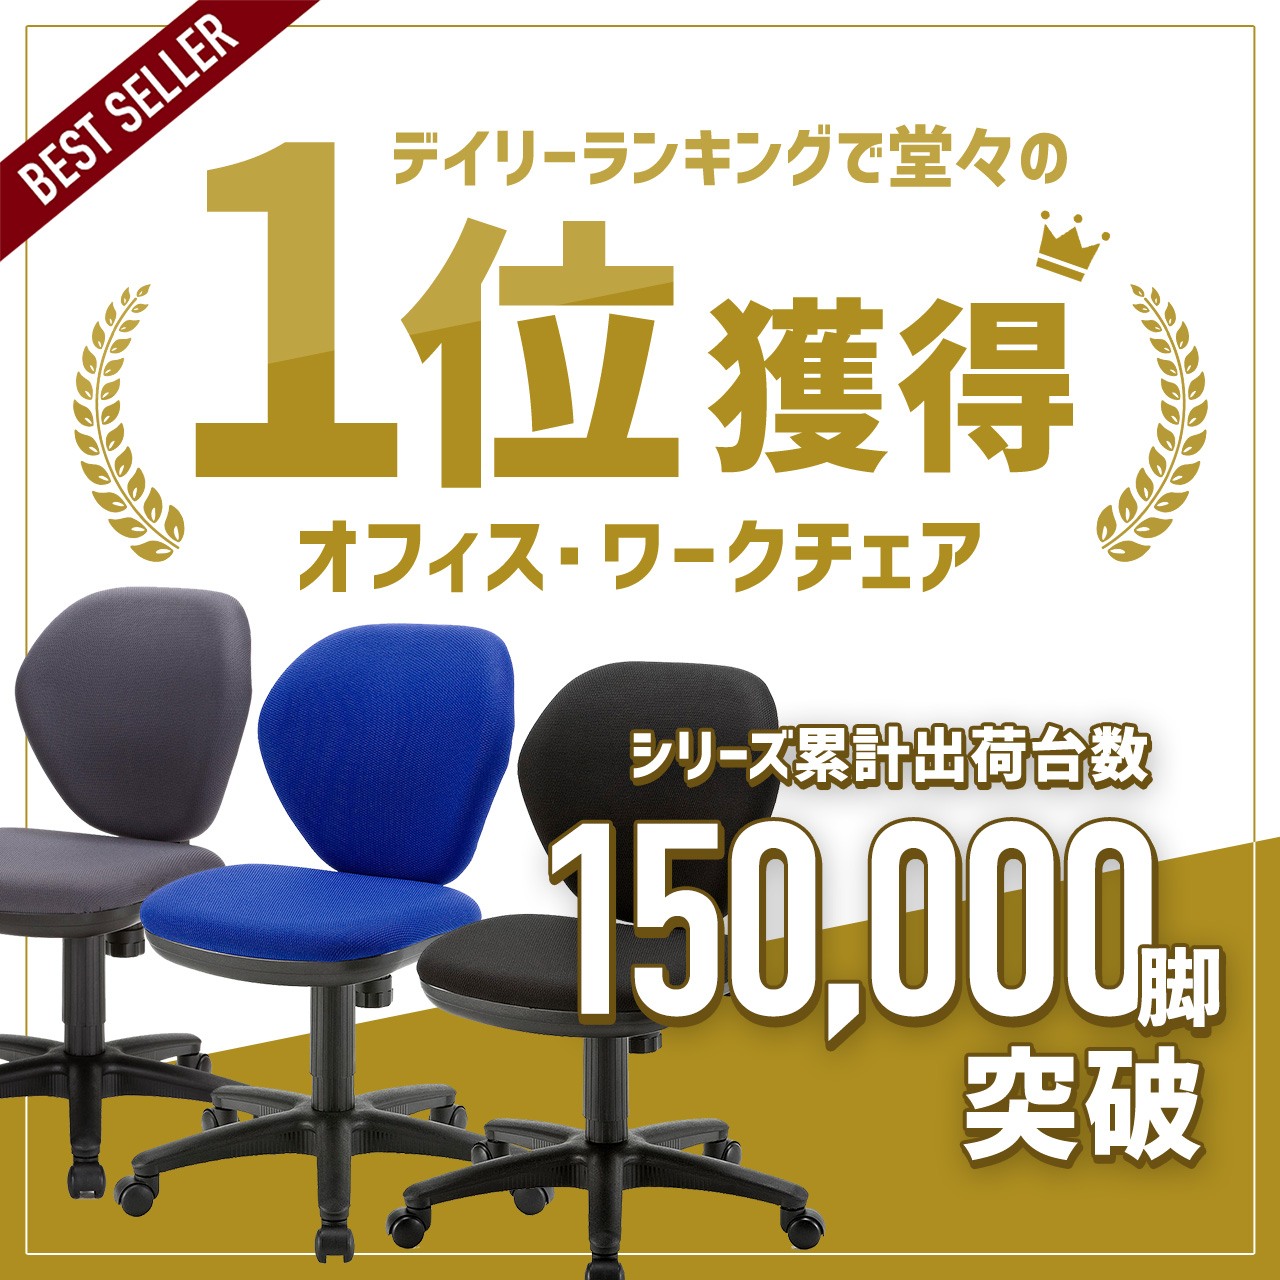 オフィスチェア パソコンチェア 事務椅子 学習 オフィスチェアー デスクチェア 椅子 チェア チェアー イス いす オフィス 5脚セット  100-SNC025-5